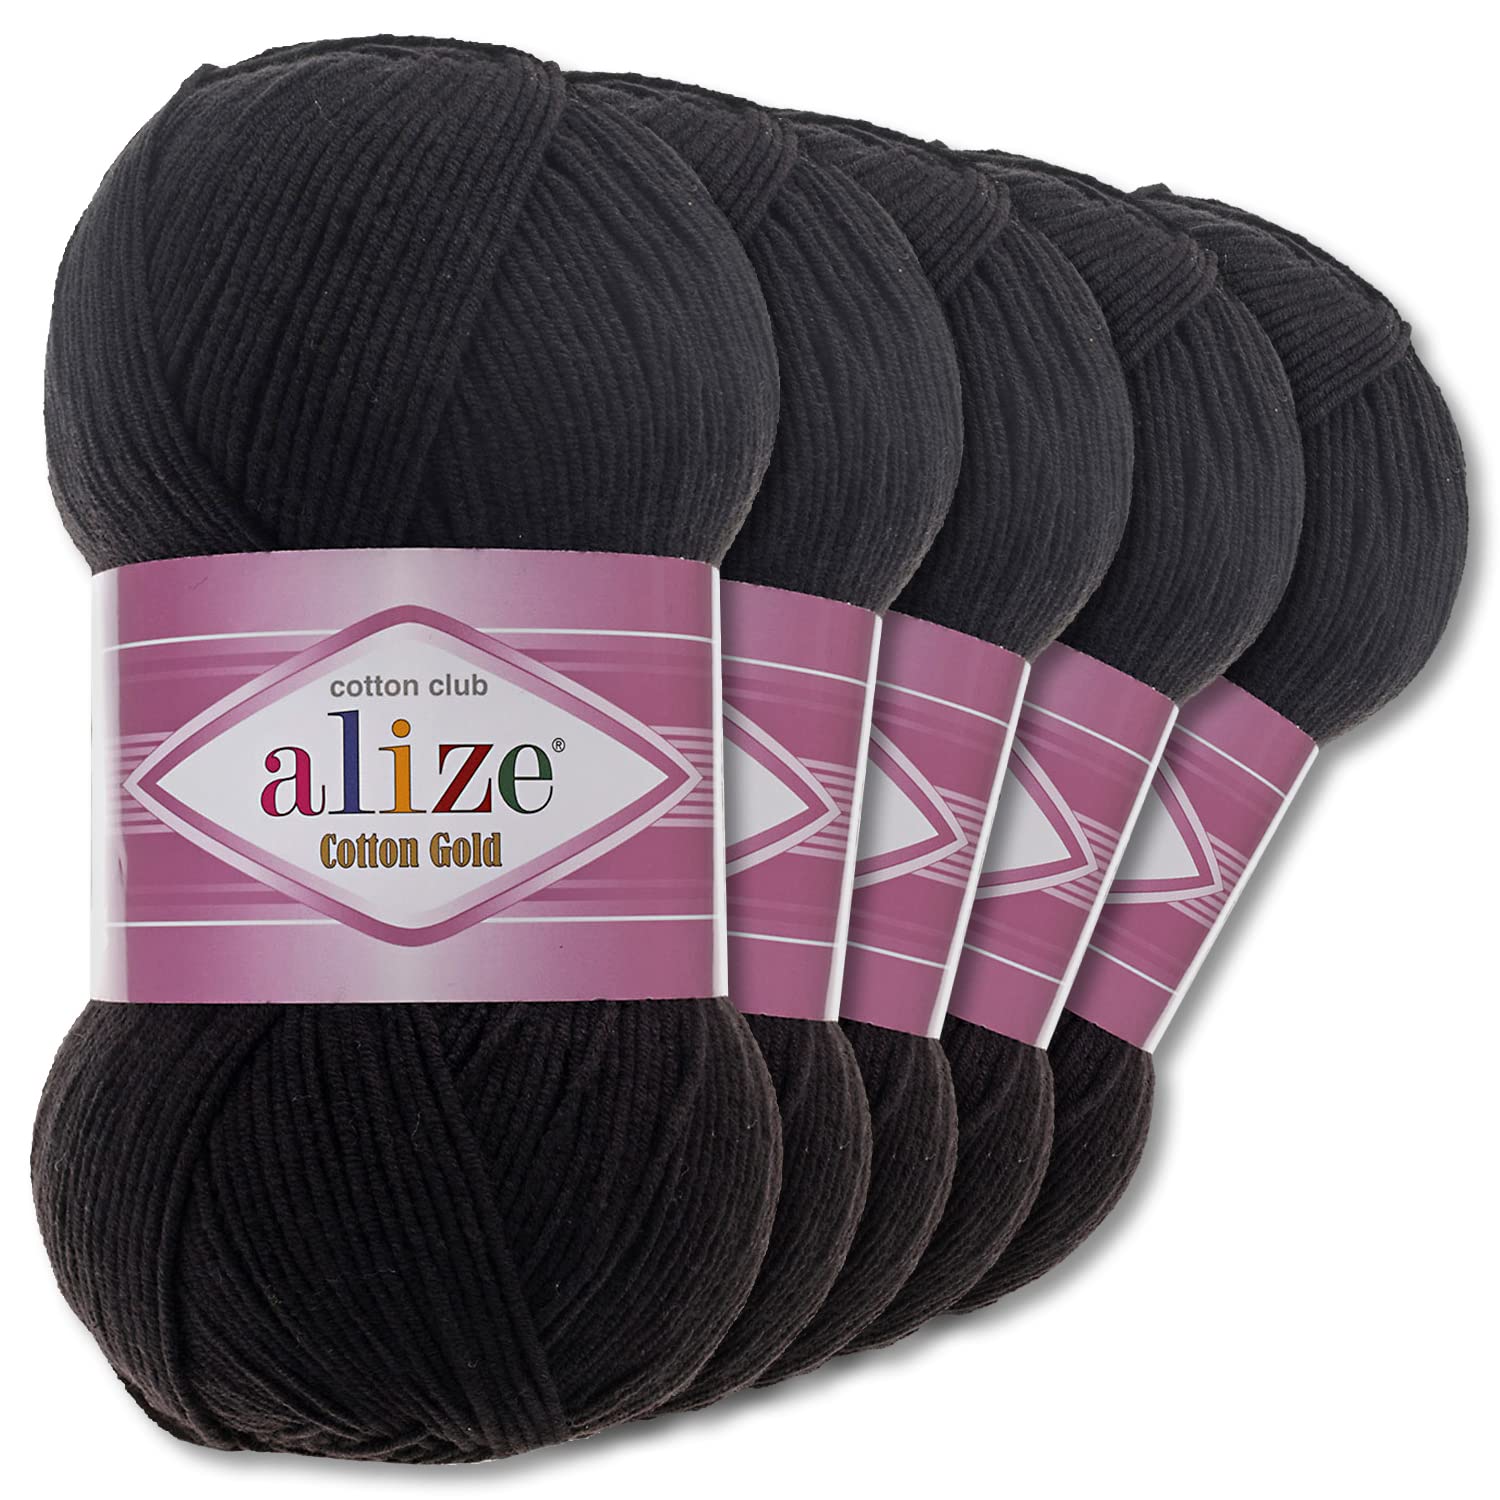 Alize 5 x 100 g Cotton Gold Premium Wolle| 39 Farben Sommerwolle Garn Stricken Amigurumi (60 | Schwarz)